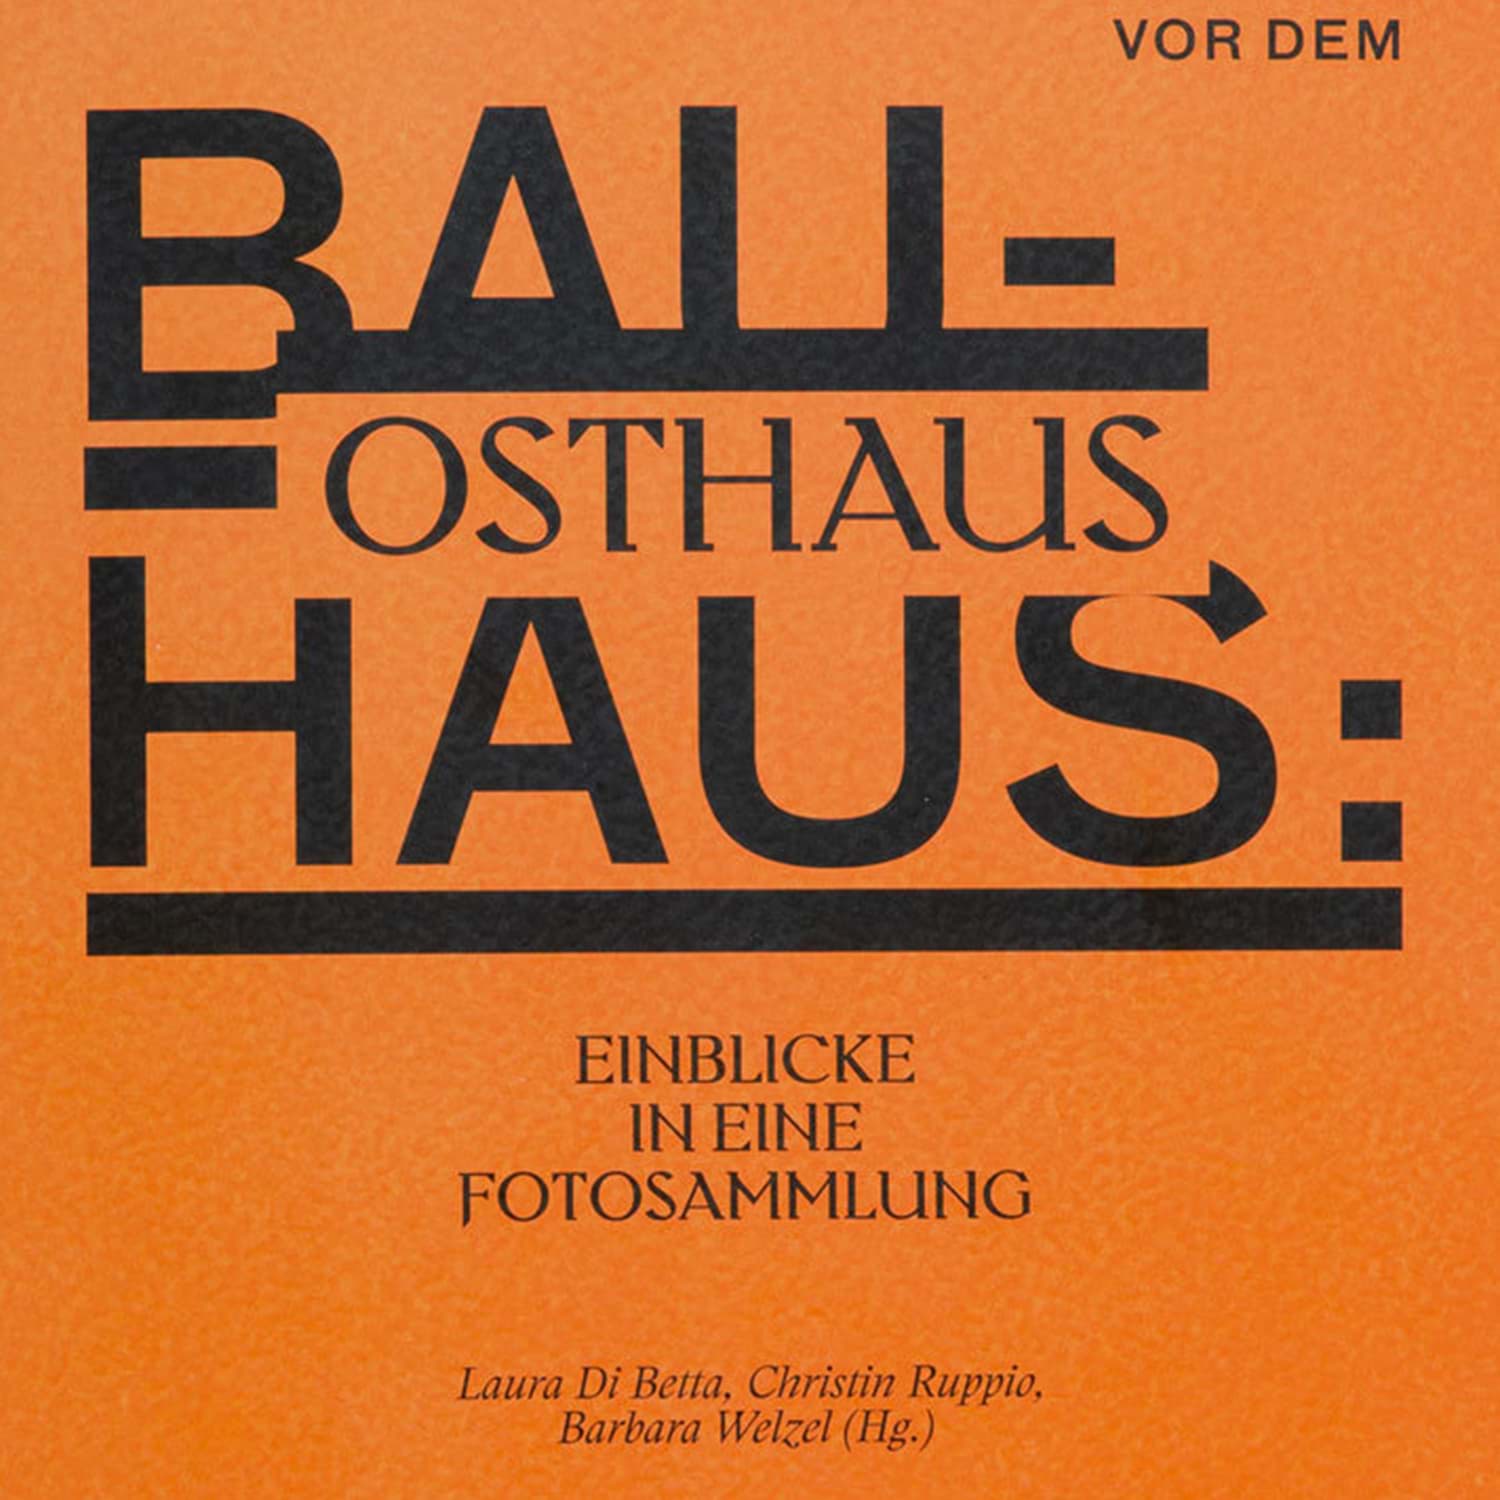 Vor dem Bauhaus: Osthaus की तस्वीर